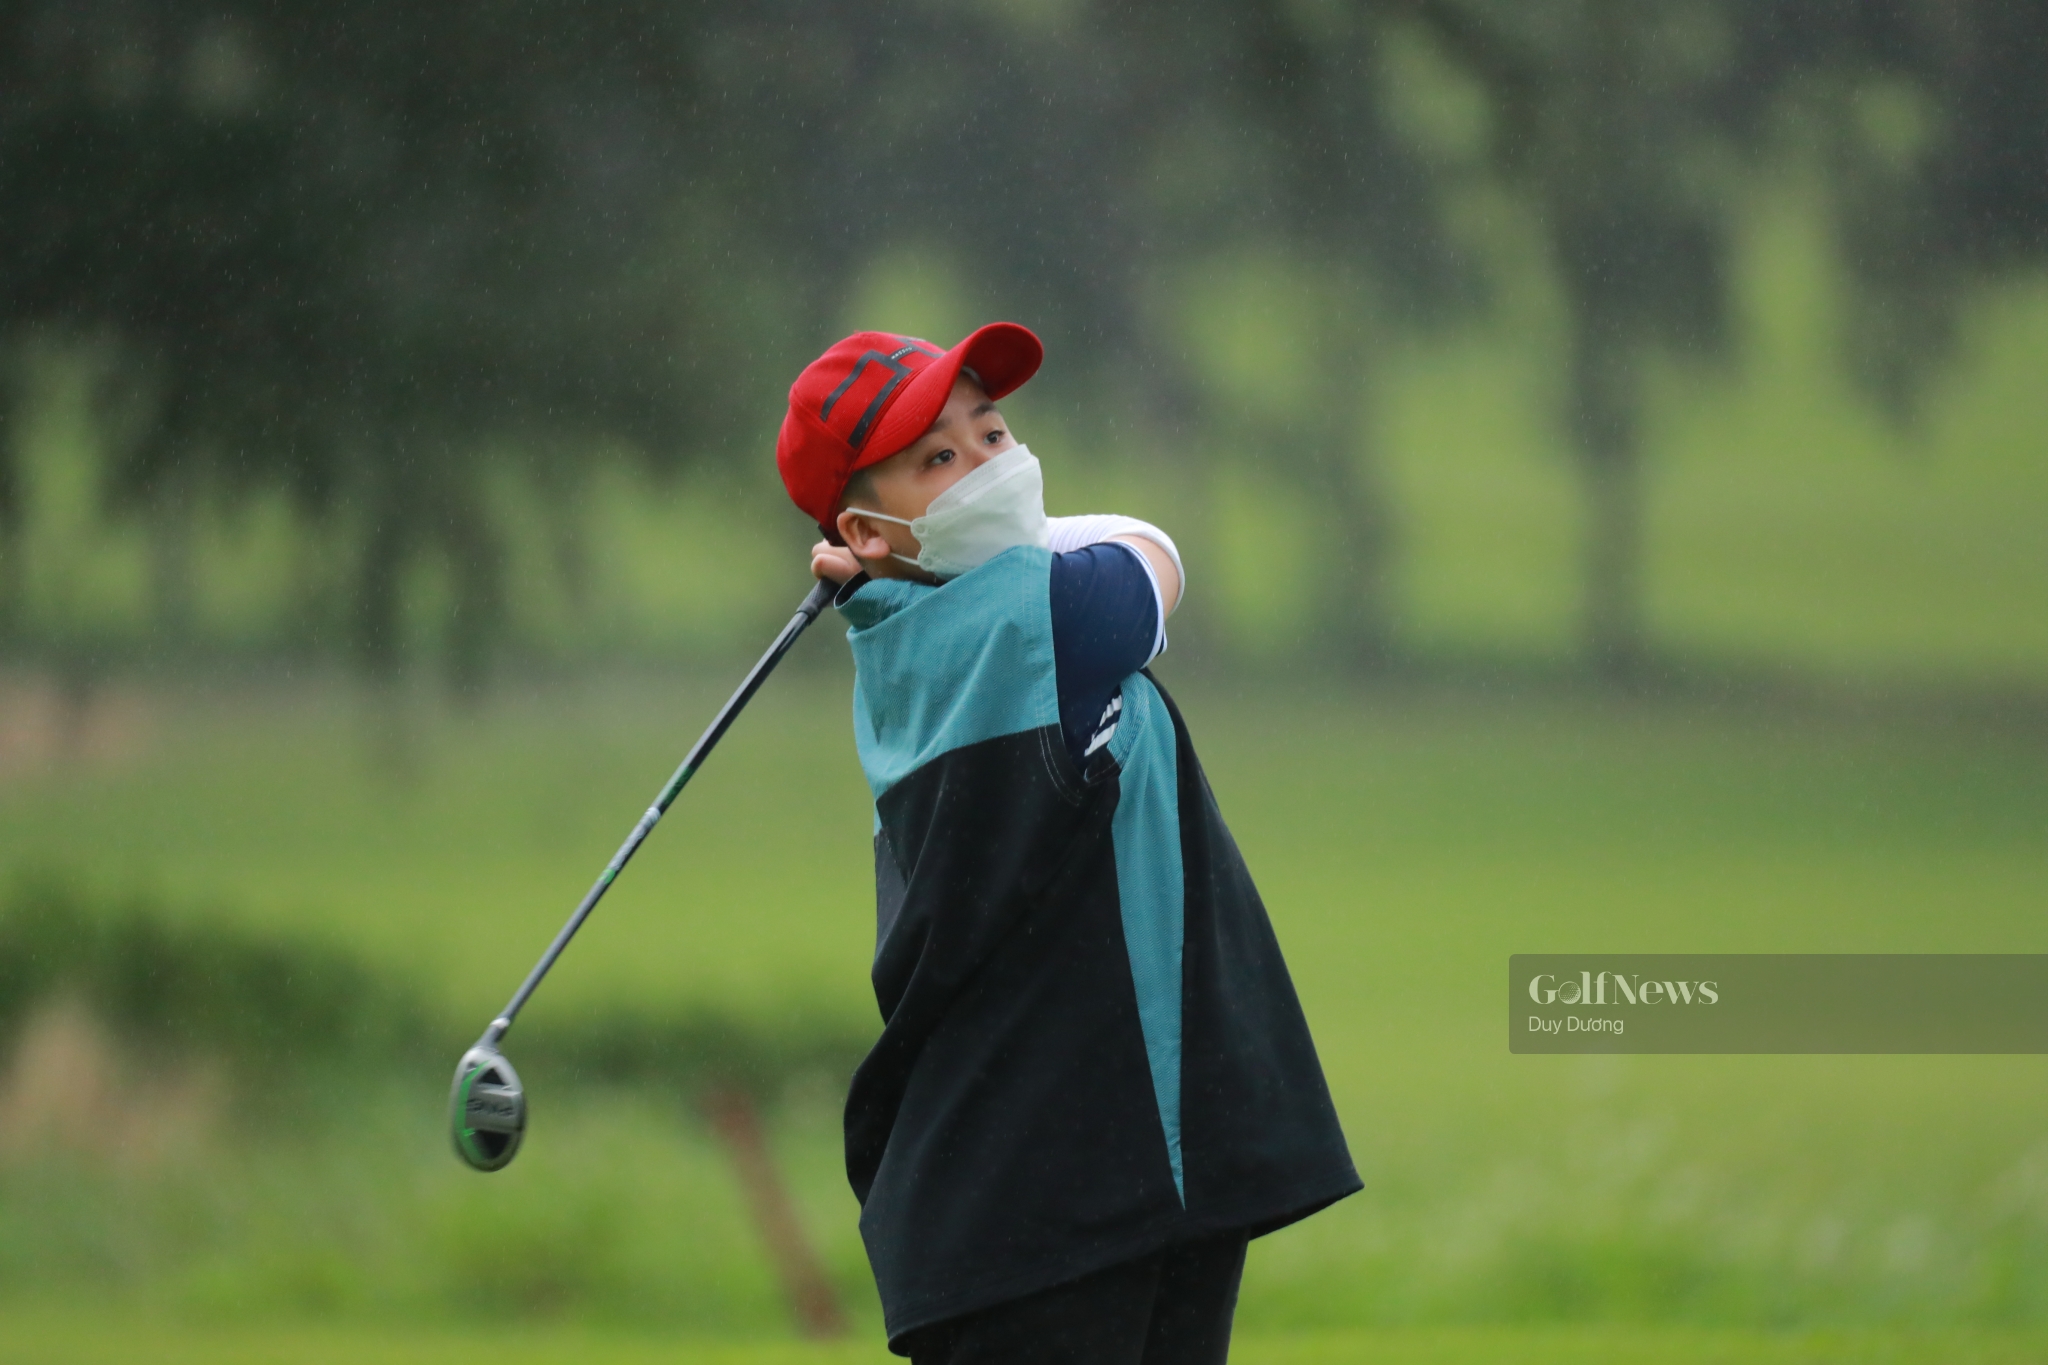 Golfer 9 tuổi giành cúp tại giải đấu của Hội golf Đà Nẵng